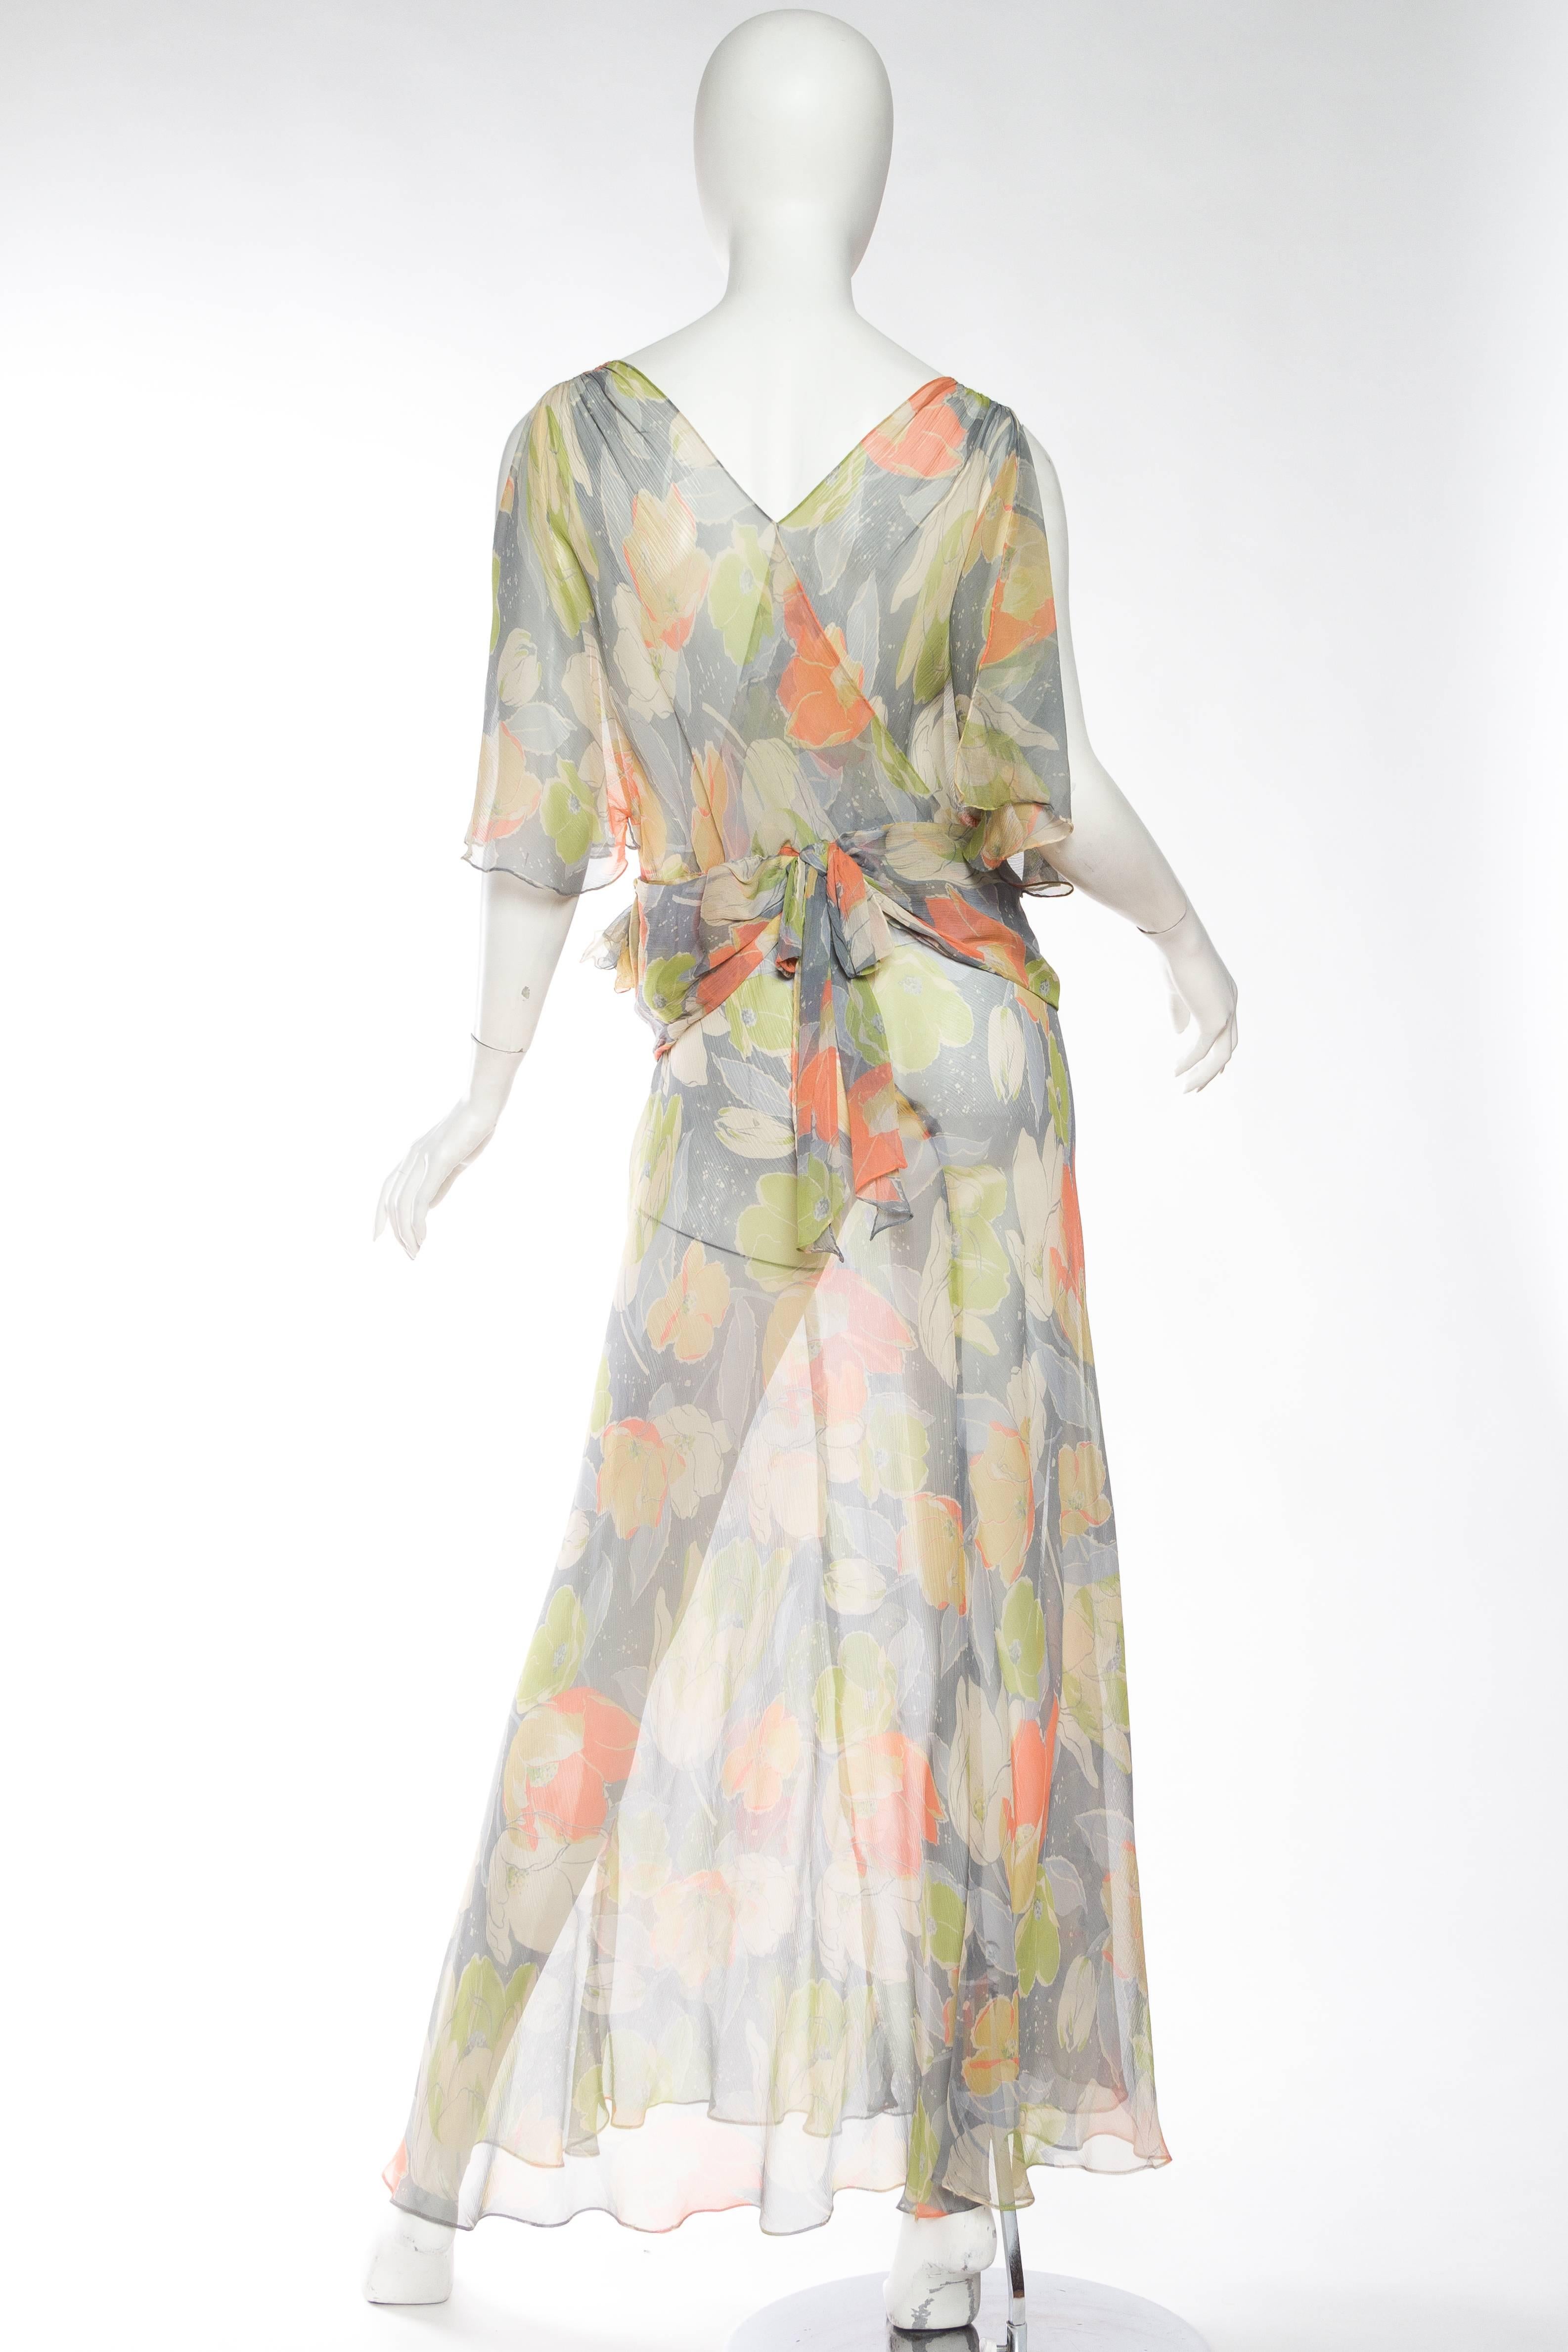 Women's Beautifully Finished Sheer 1930s Bias-Cut Floral Silk Chiffon Dress